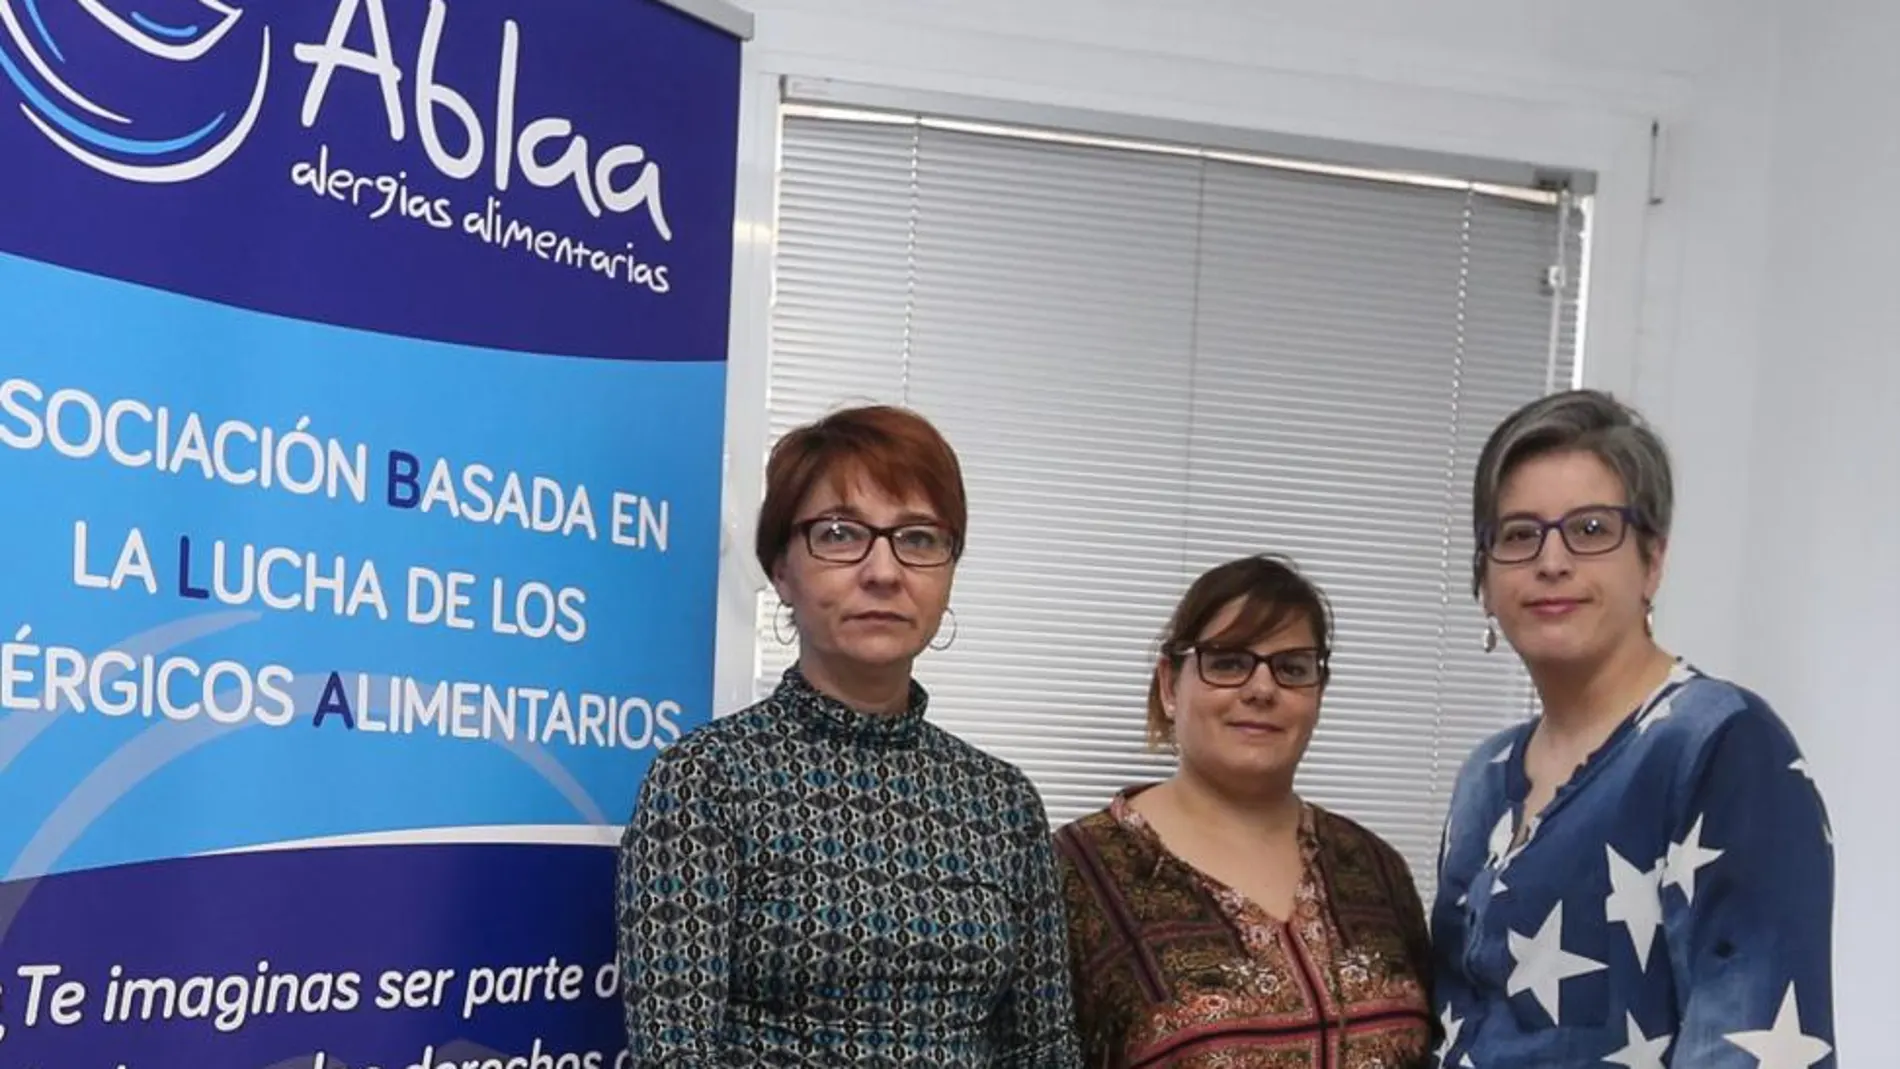 Ana Isabel Rodríguez, Estela Ruiz y Laura González, cabezas visibles de la asociación Ablaa en la lucha contra las alergias alimentarias